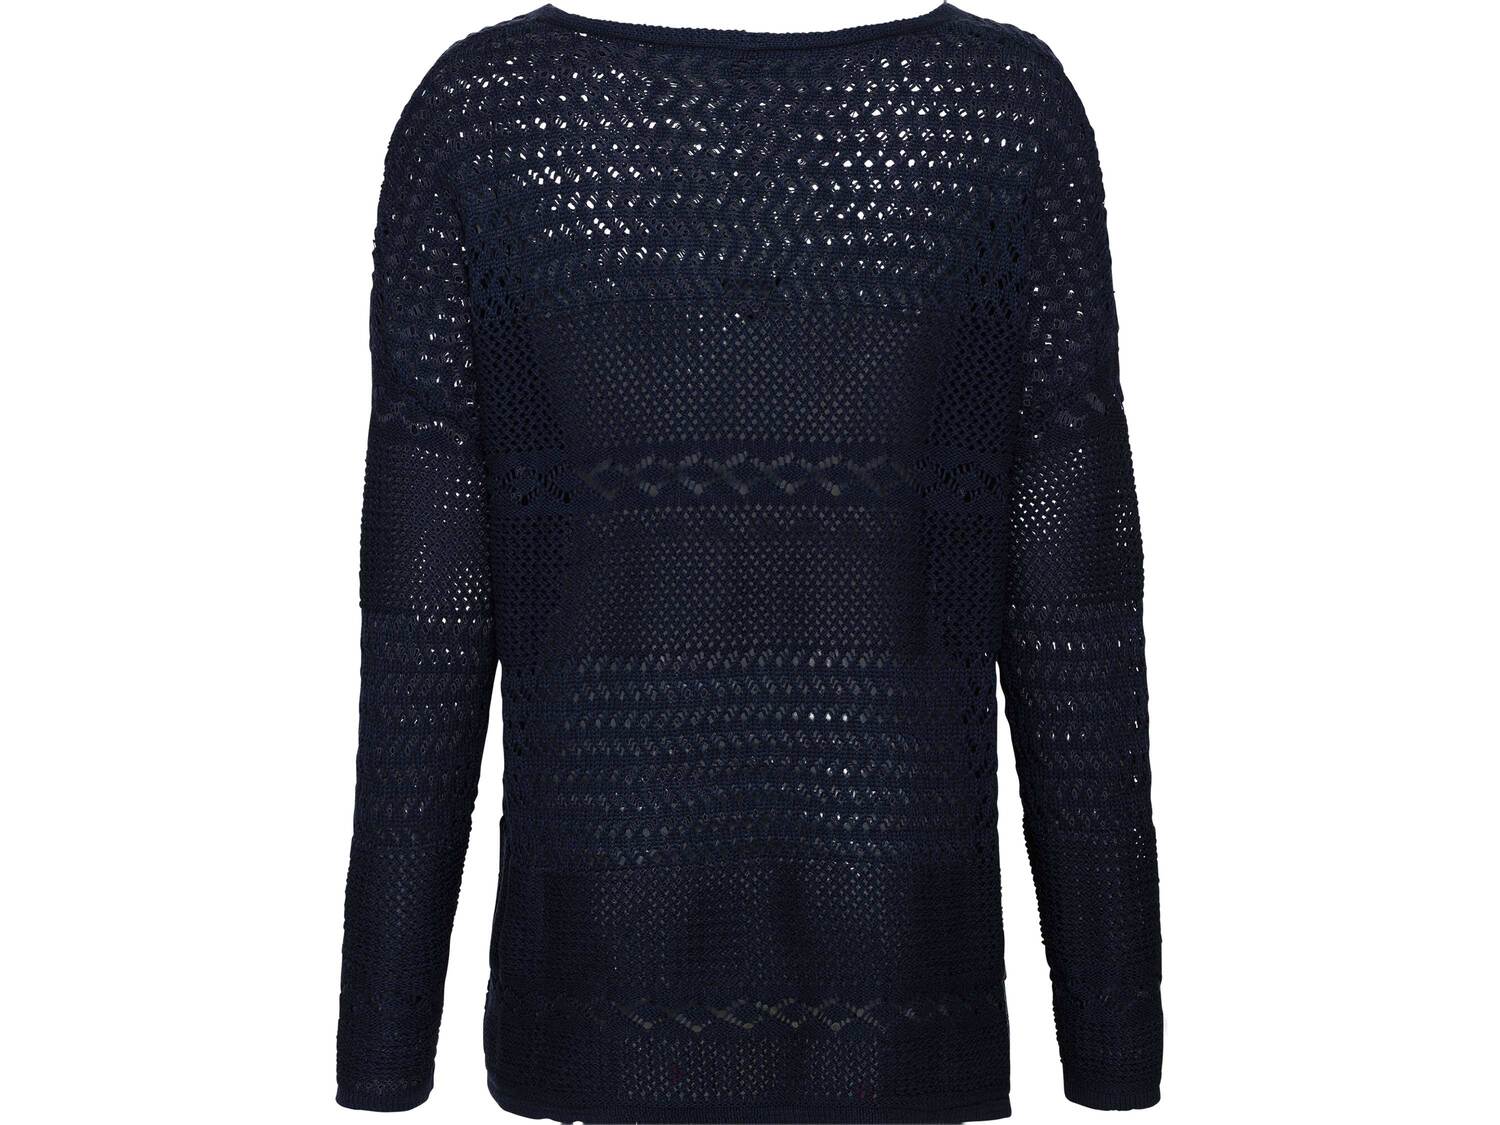 Sweter damski z bawełny Esmara, cena 34,99 PLN 
- rozmiary: S-L
- 100% bawełny
- ...